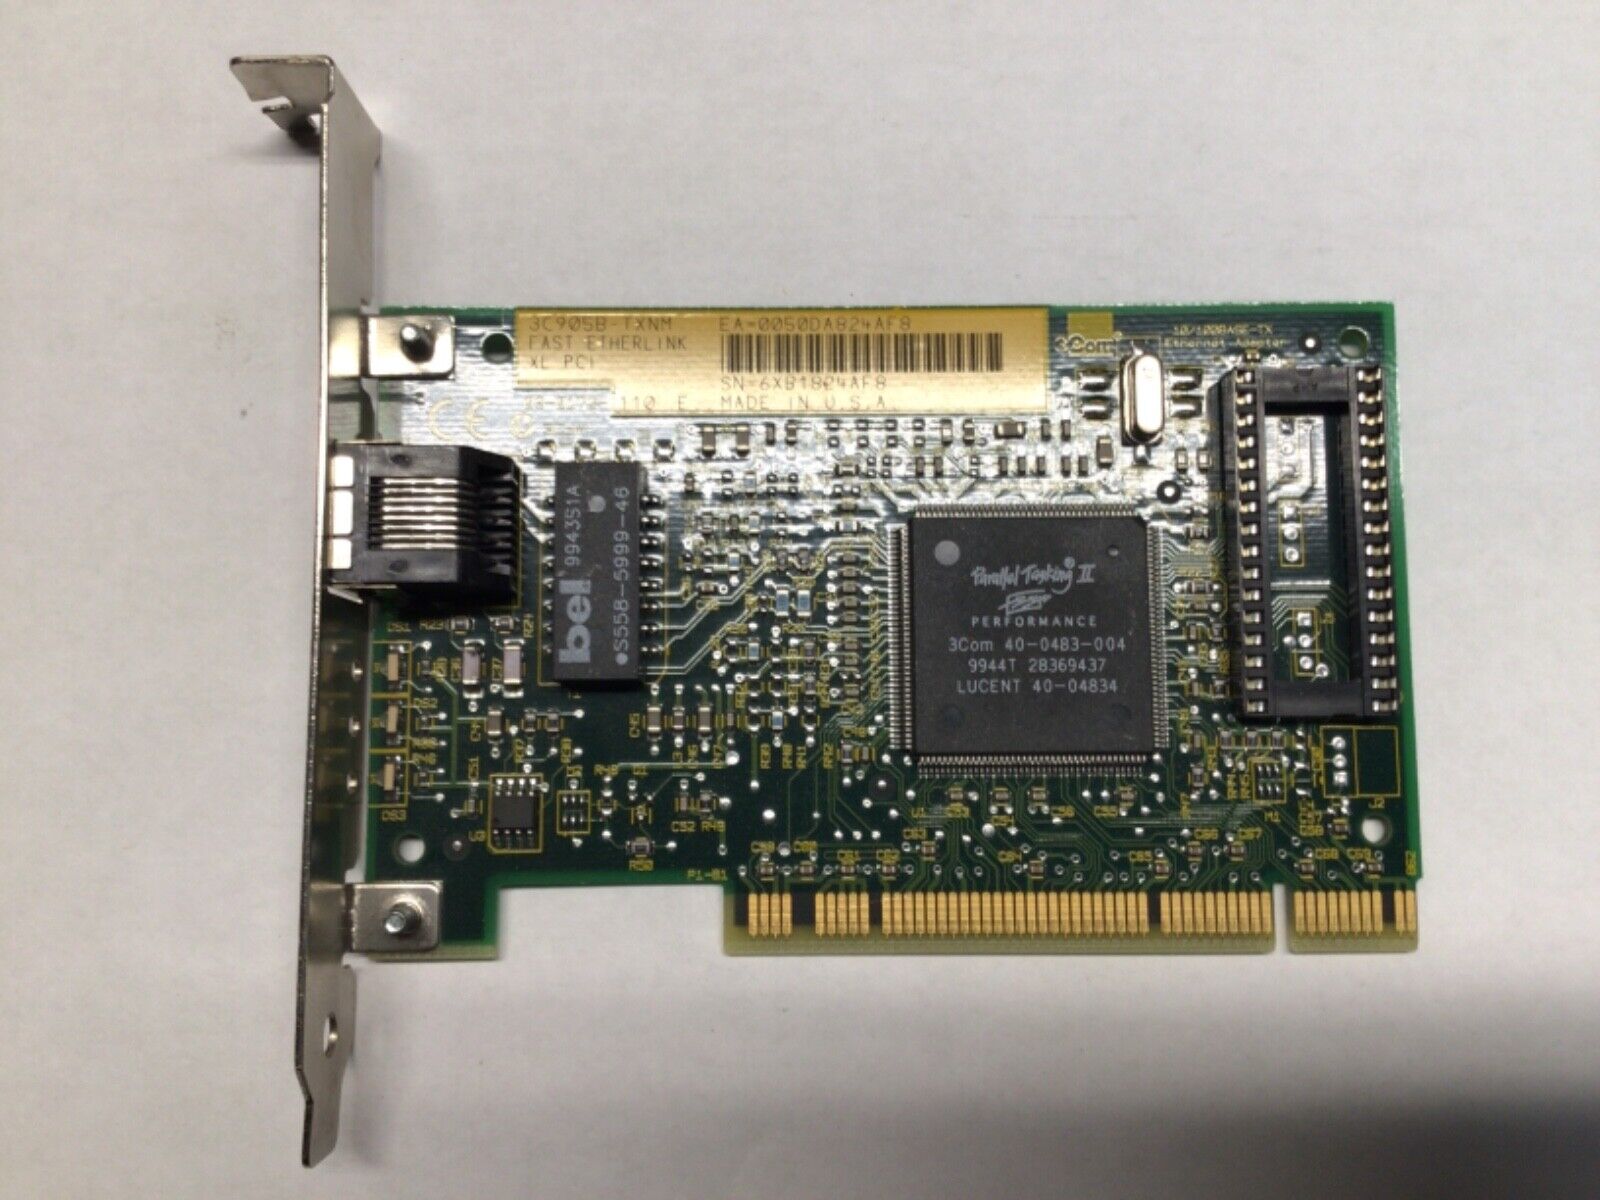 Ethernet Network Card10/100 RJ45, 3COM 3C905B-TXNM Fast EtherLink XL PCI